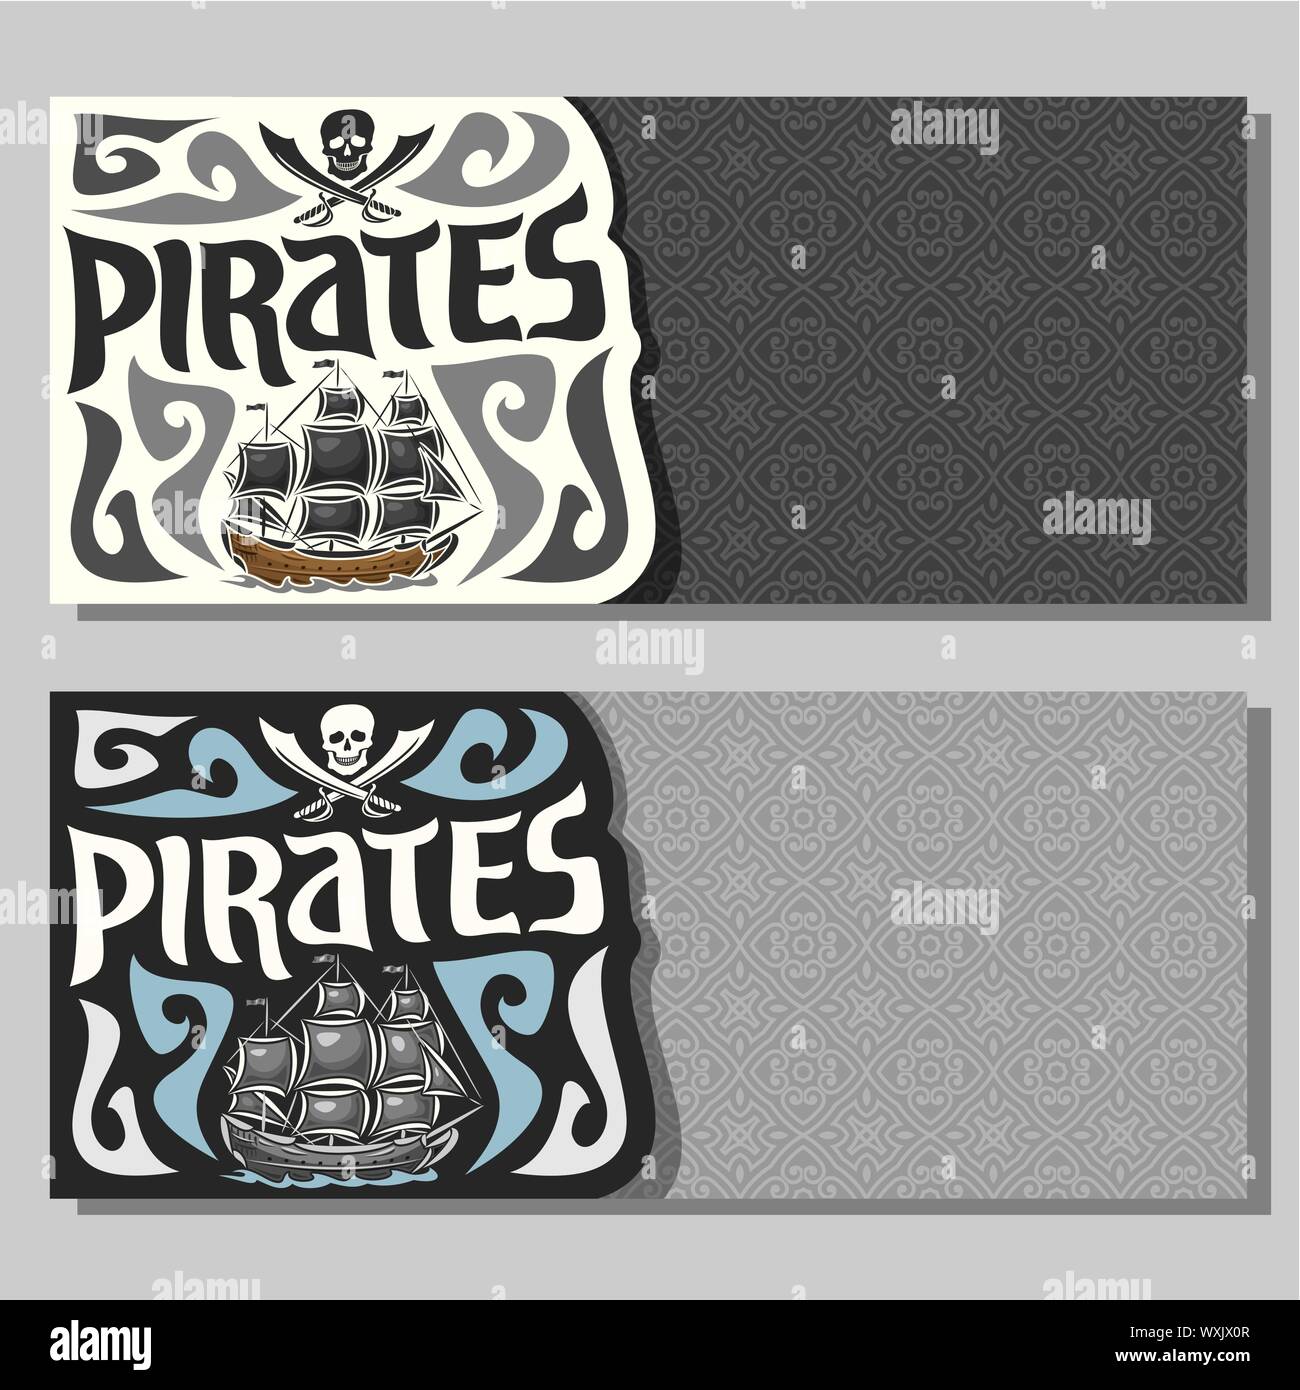 Vektor horizontale Banner für Piraten: Schädel und gekreuzte Säbel und alten Segelschiff auf grau Zusammenfassung Hintergrund. Stock Vektor